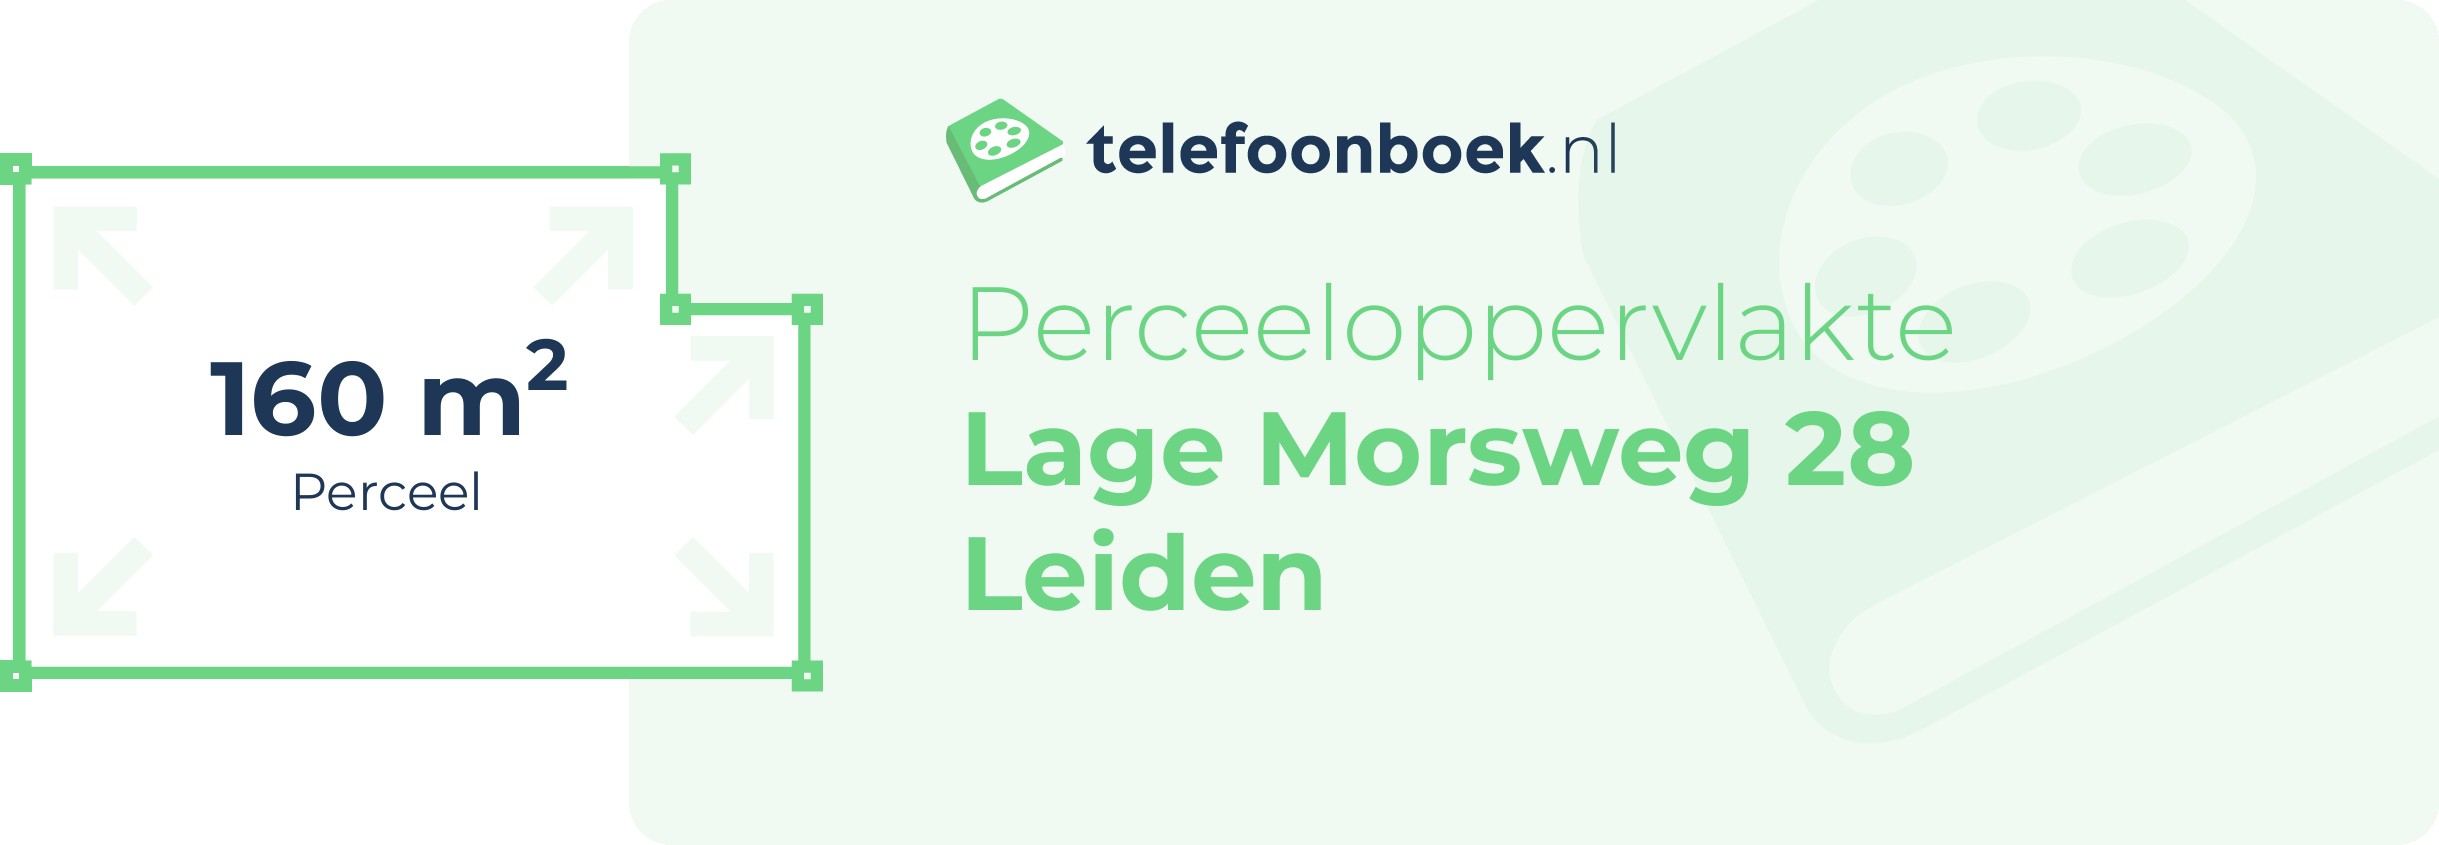 Perceeloppervlakte Lage Morsweg 28 Leiden